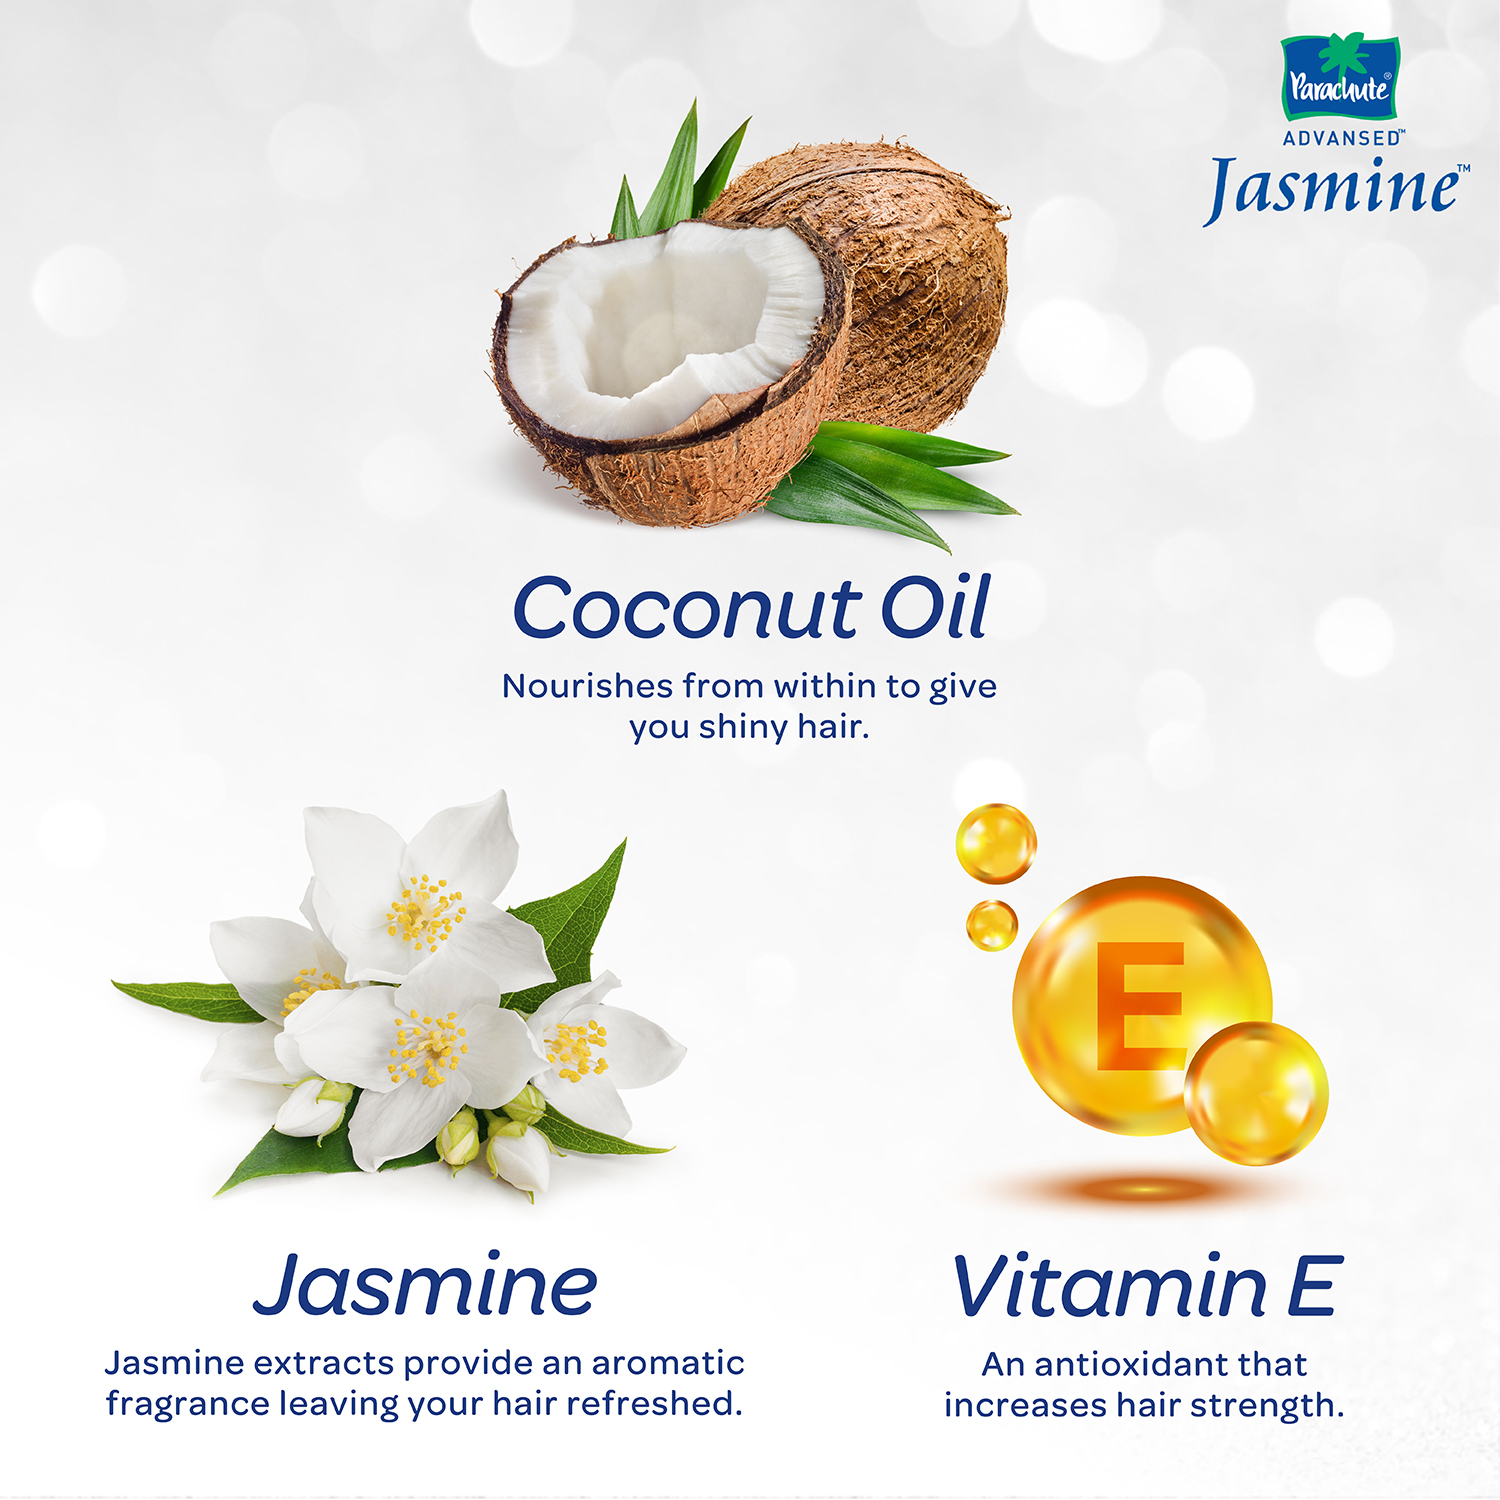 Buy Parachute advanced jasmine coconut hair oil and earn 2 points